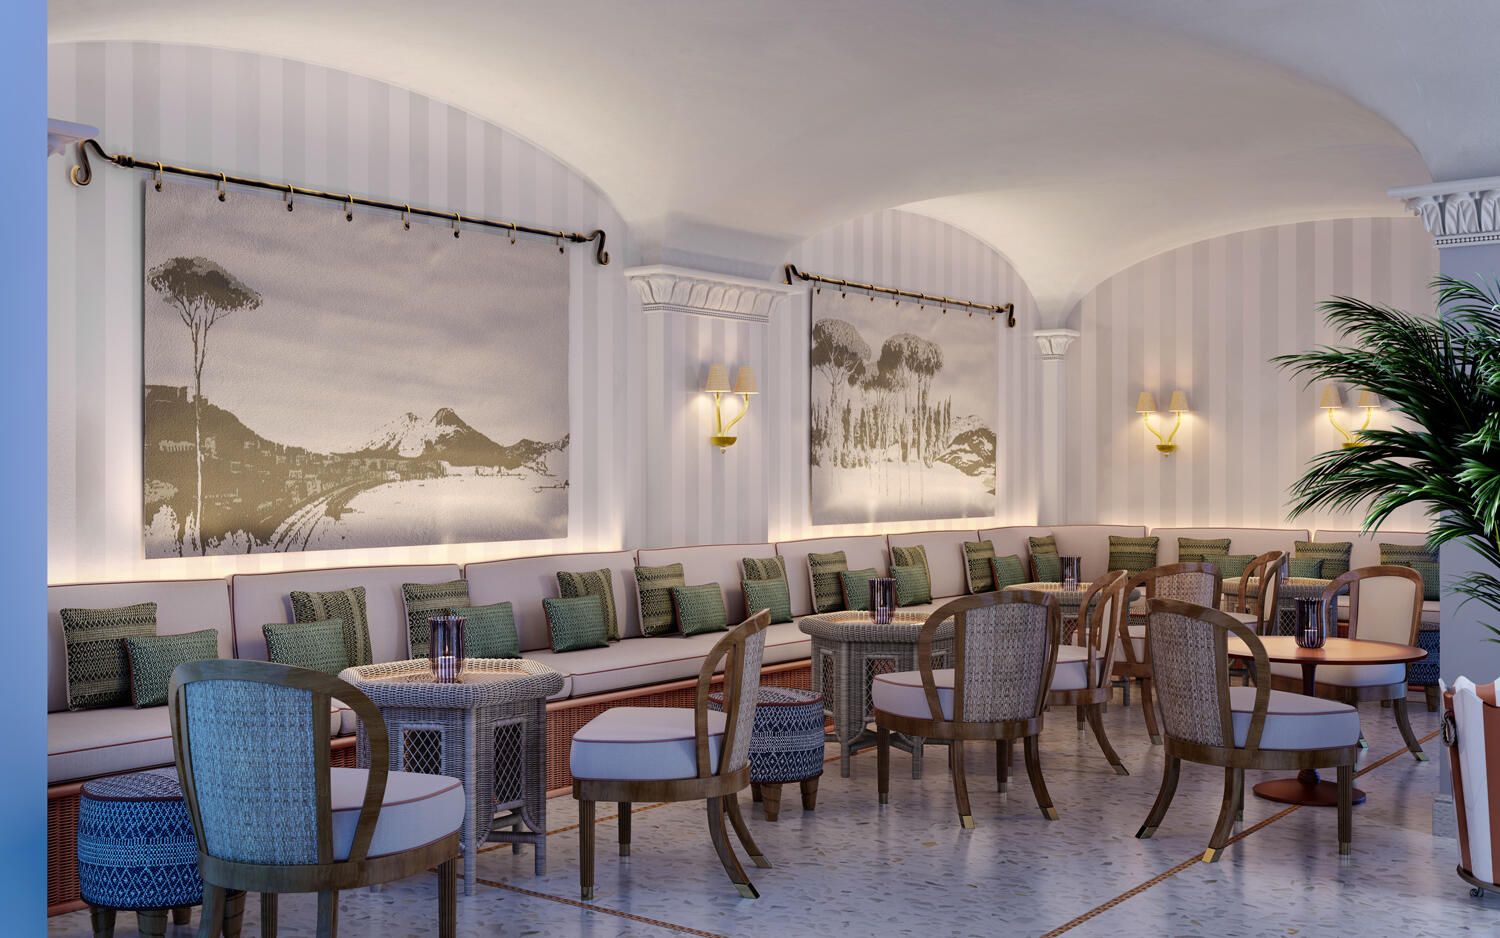 Bar im Hotel La Palma: Großer Raum mit vielen Holzstühlen und kleinen runden Tischen. Die Wände sind weiß .